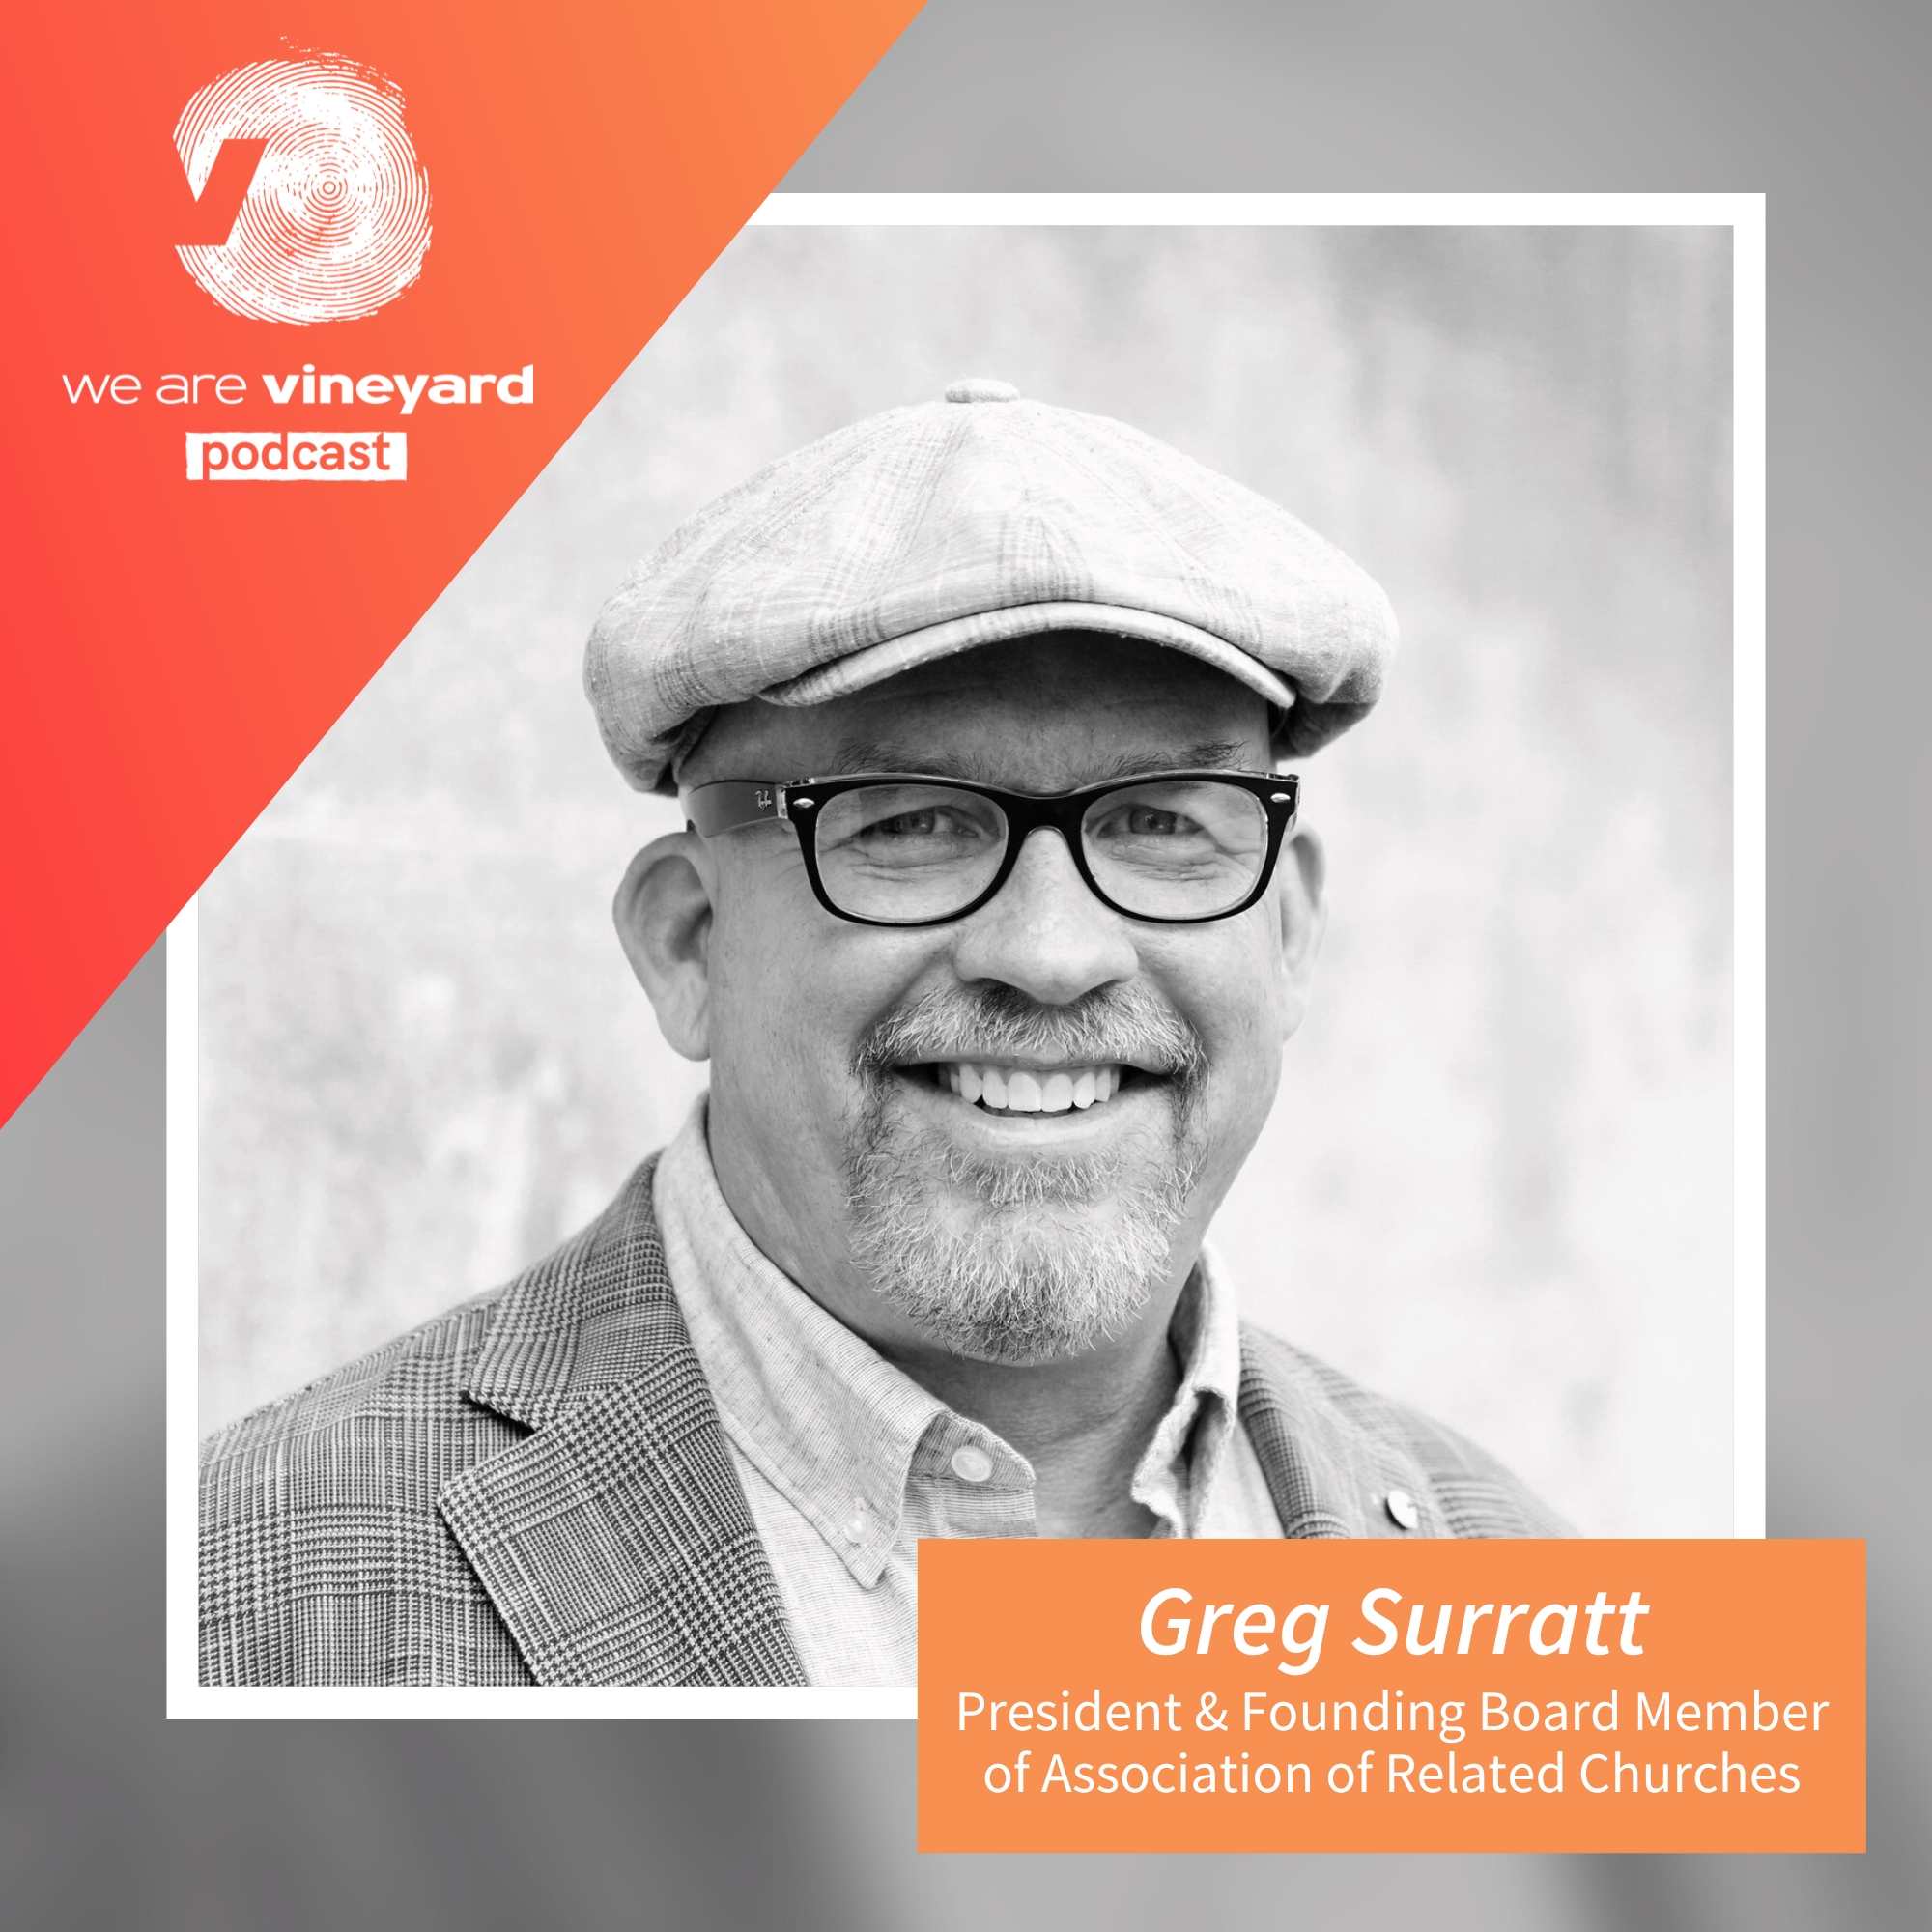 Greg Surratt: presidente y cofundador de la Asociación de Iglesias Relacionadas